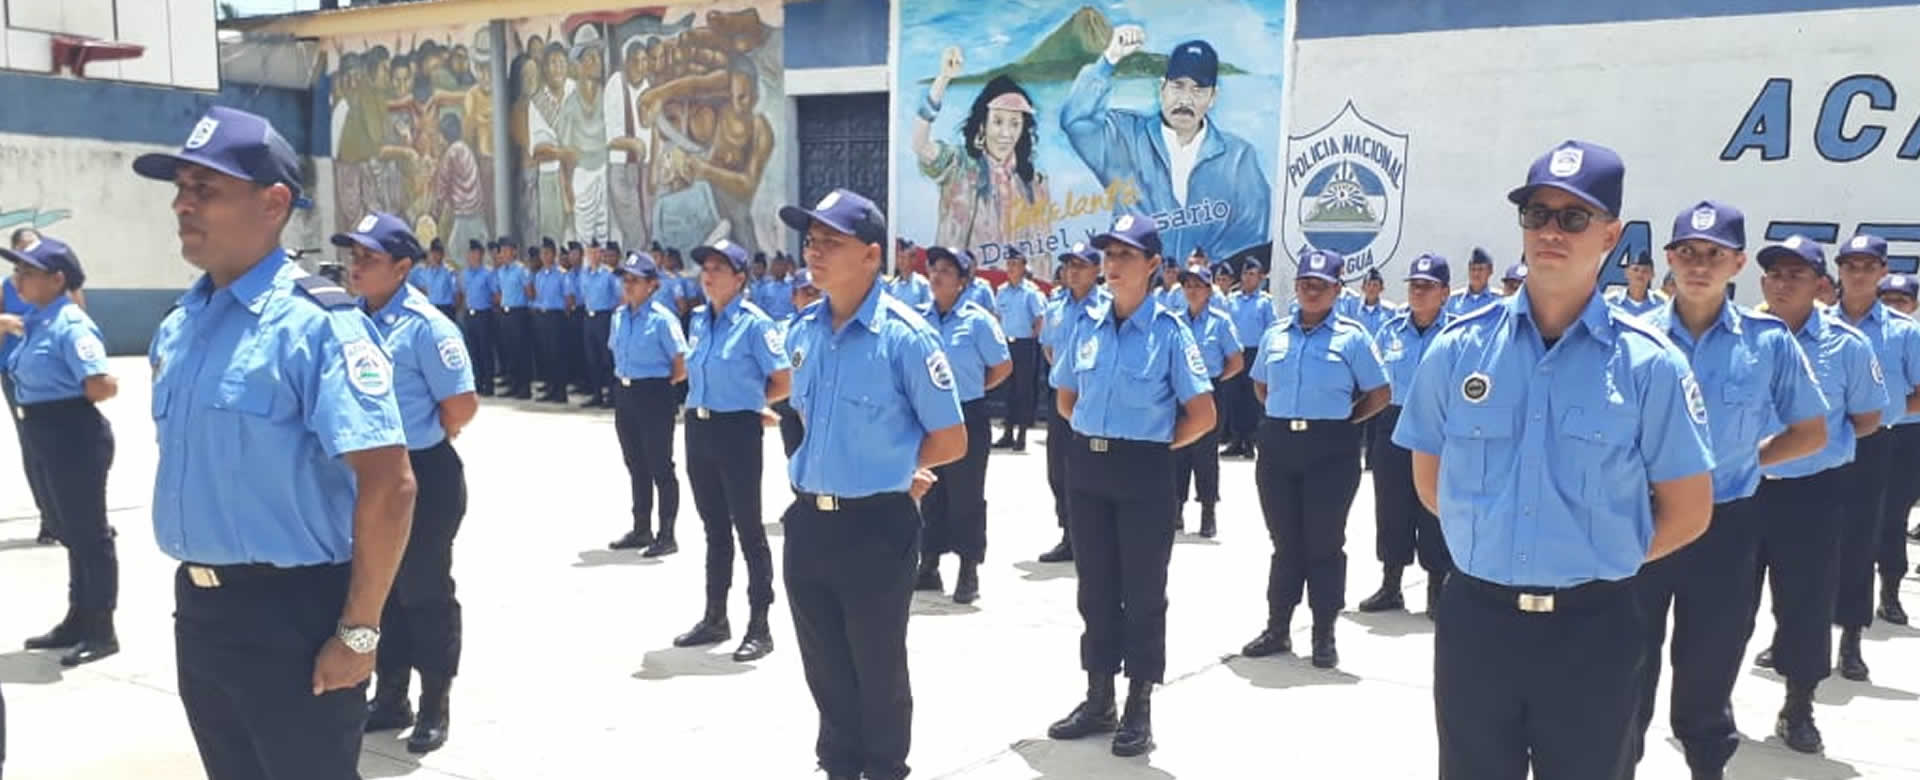 Graduación en honor a la inspectora Juana Aguilar egresa a 23 nuevos policías